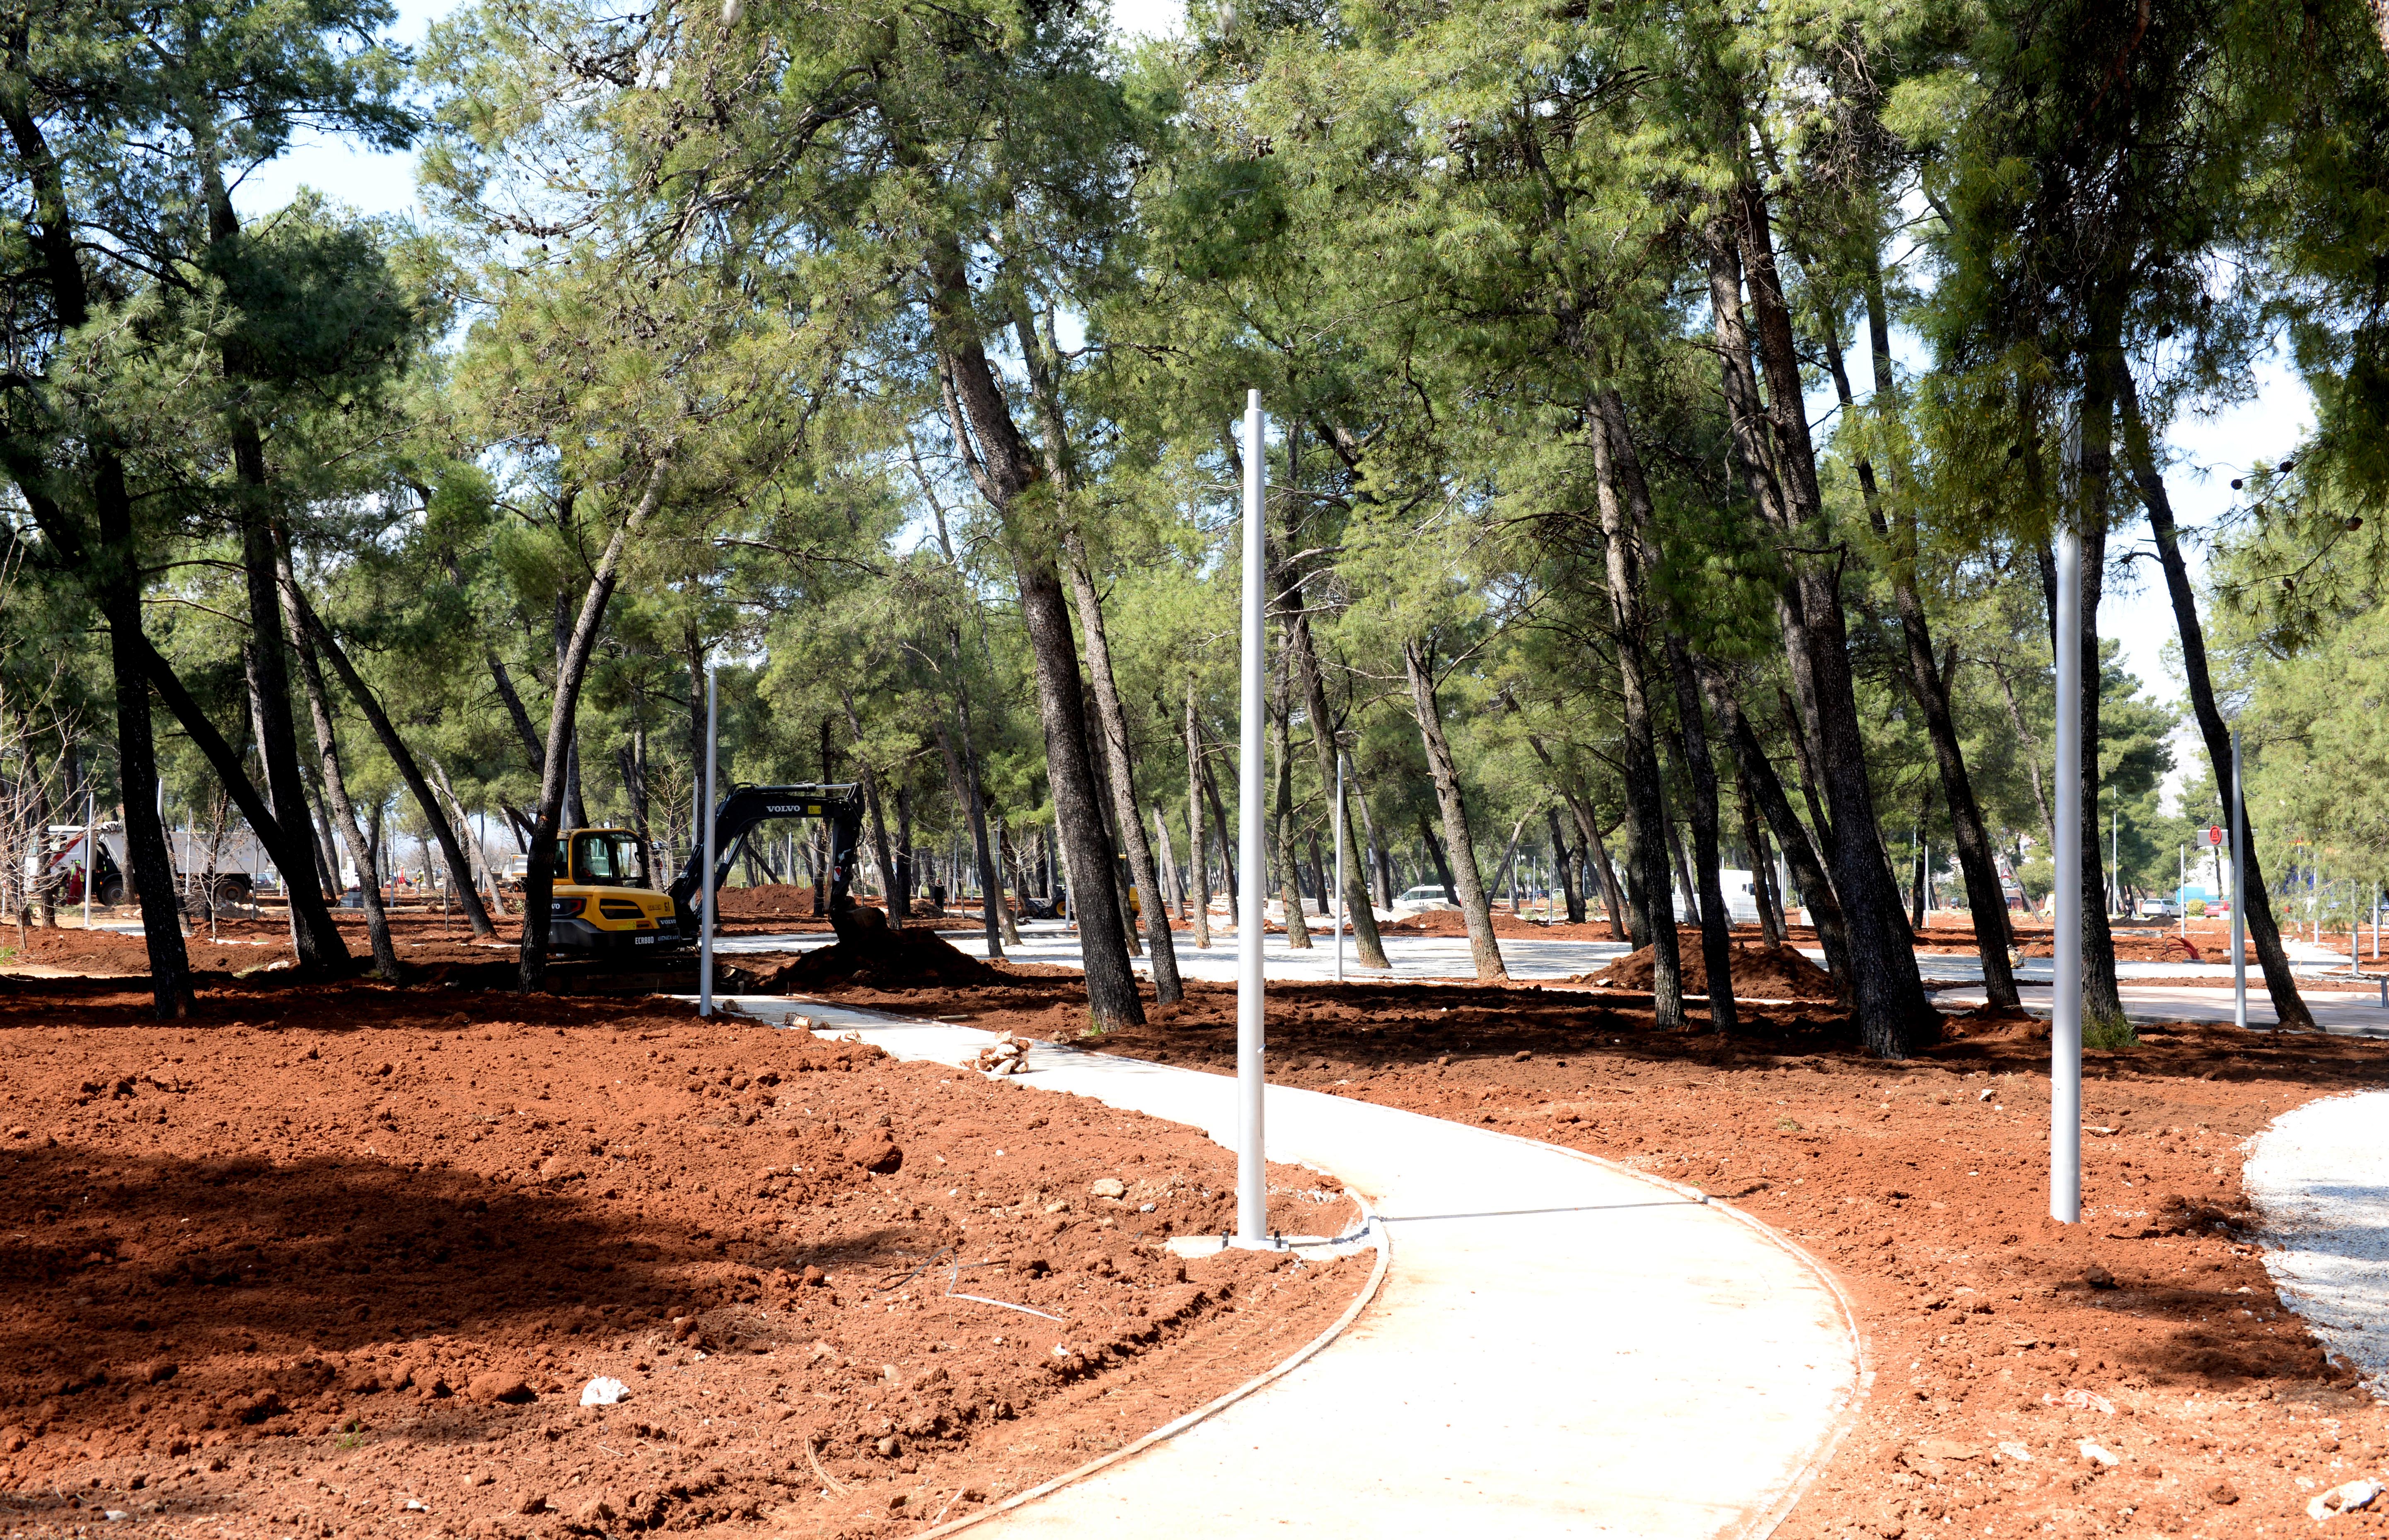 Uređenje park-šume Tološi odvija se prema planu: Podgorica će uskoro dobiti jednu od najsavremenijih i najljepših sportsko-rekreativnih zona